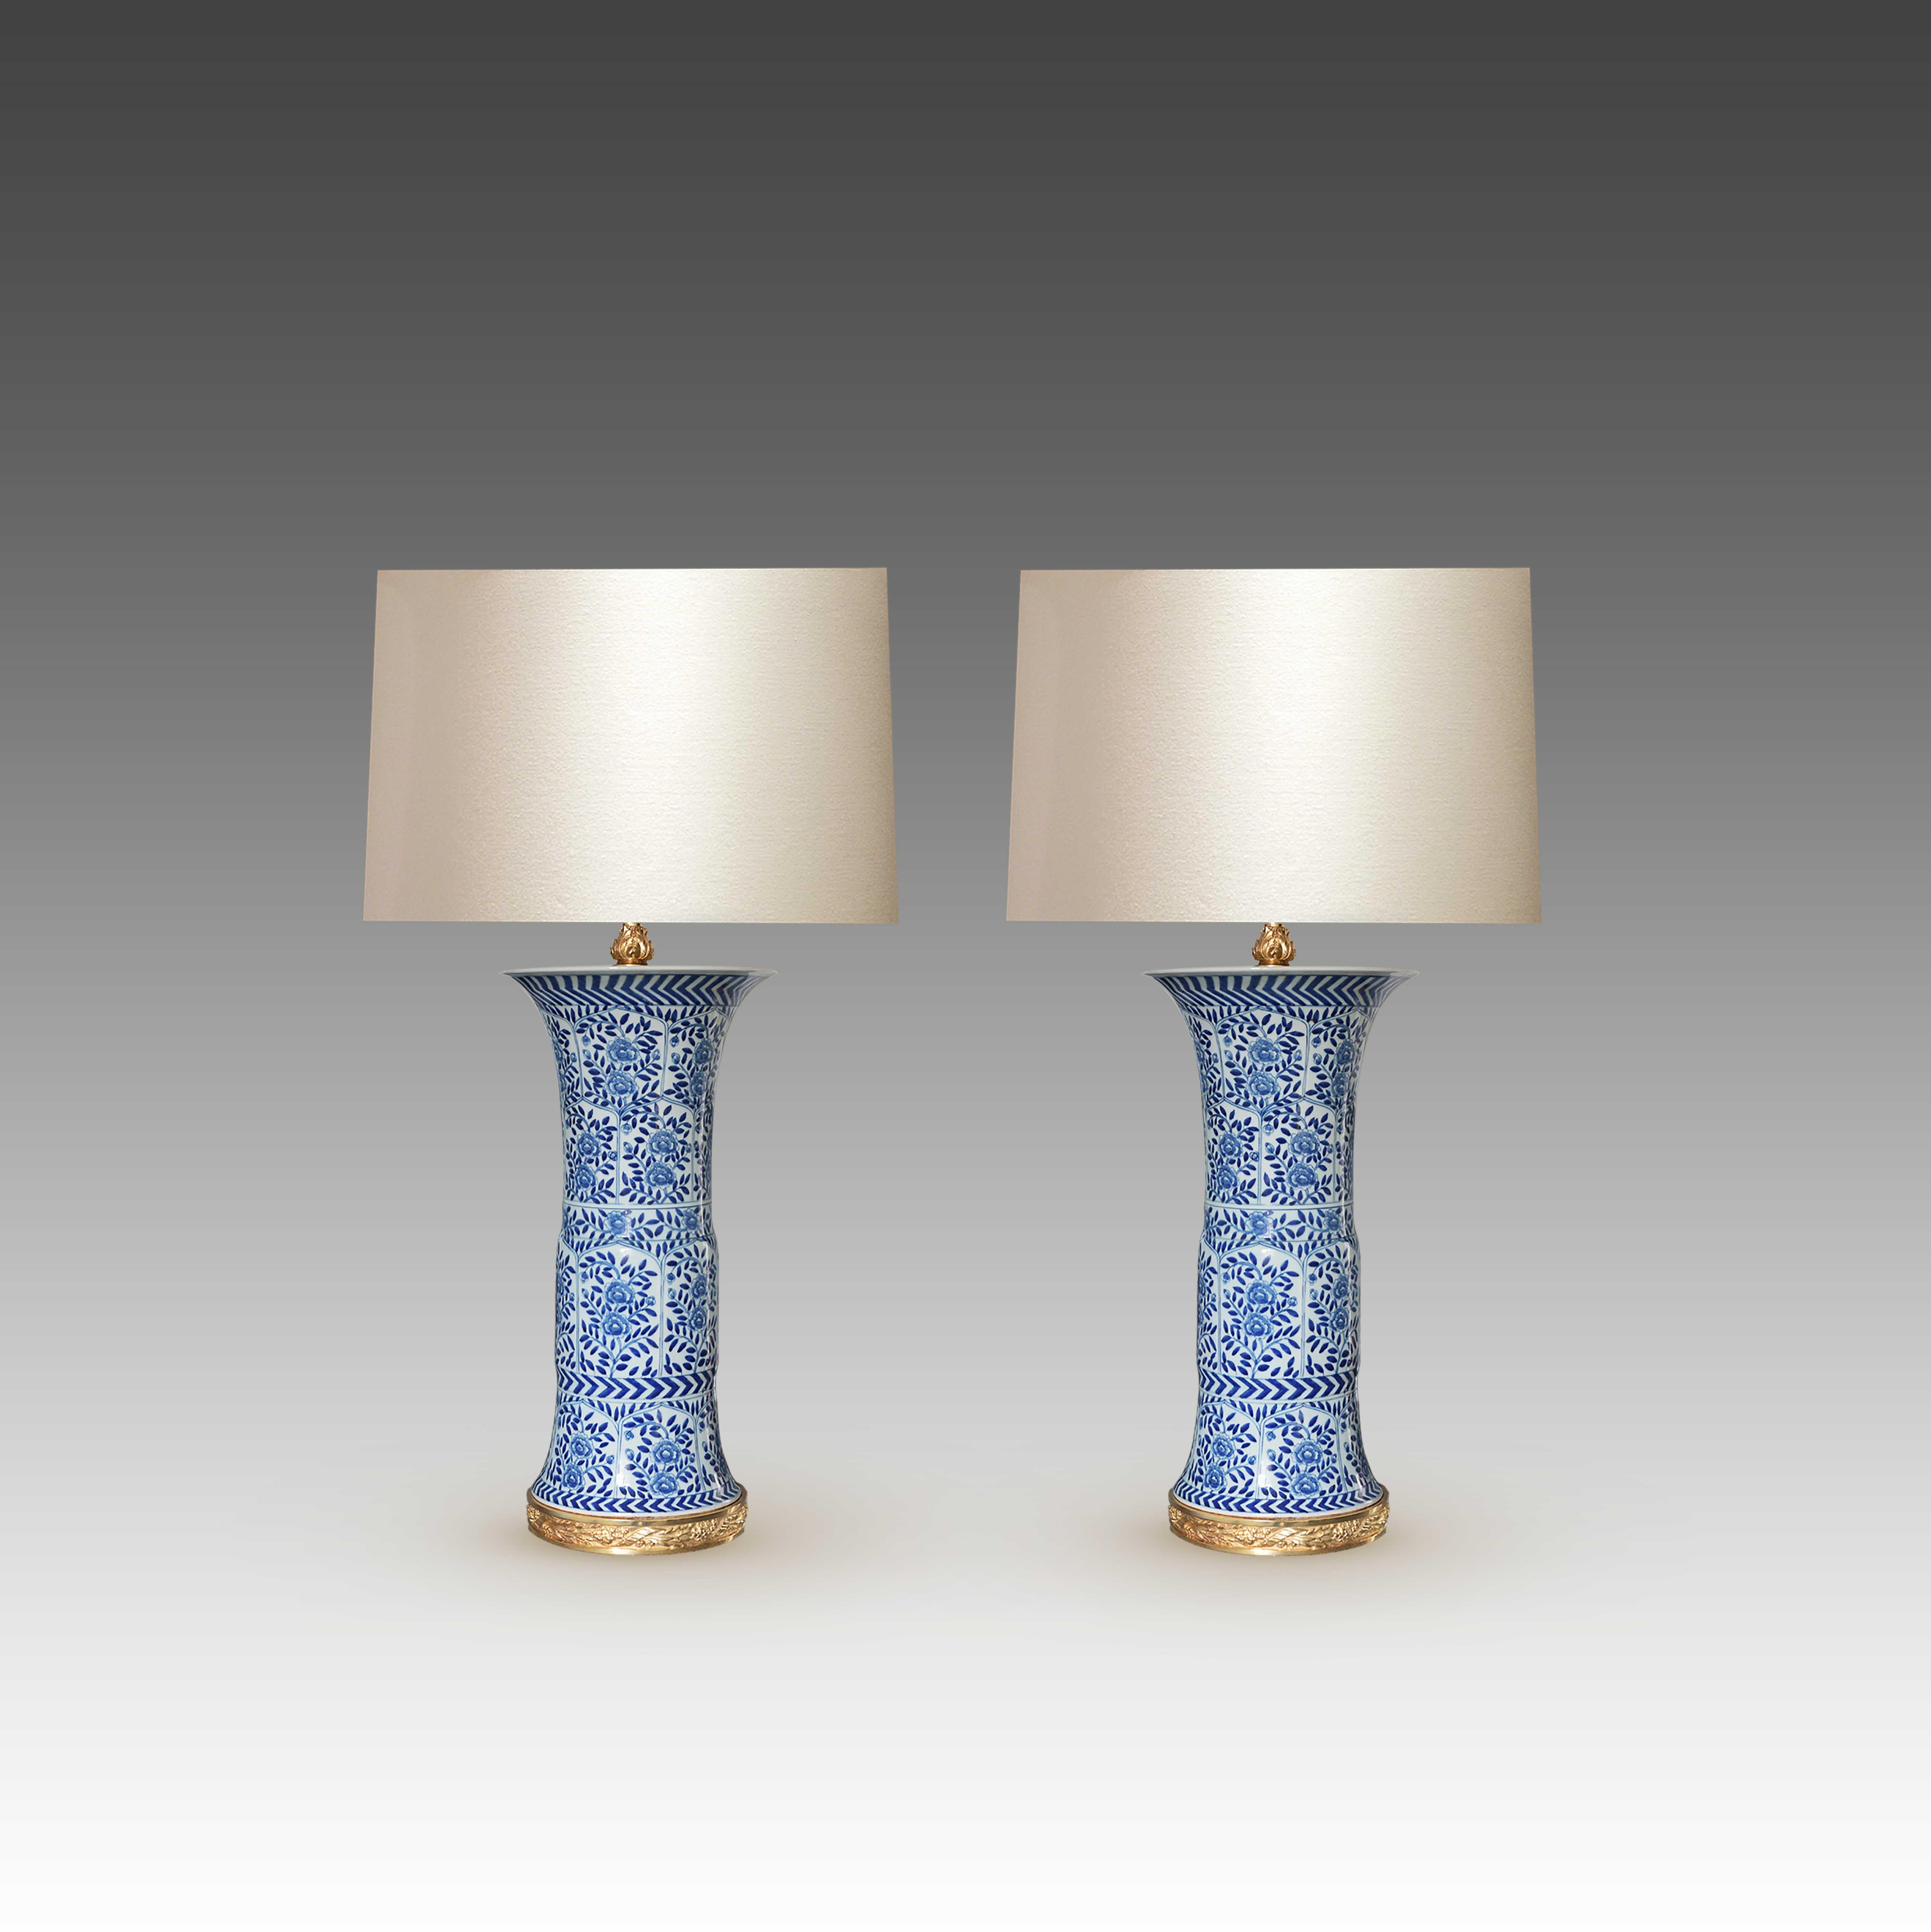 Paar fein gemalte Lampen aus blauem und weißem Porzellan und andere feine Sockel aus vergoldeter Bronze.
Bis zur Spitze der Porzellanvase: 20